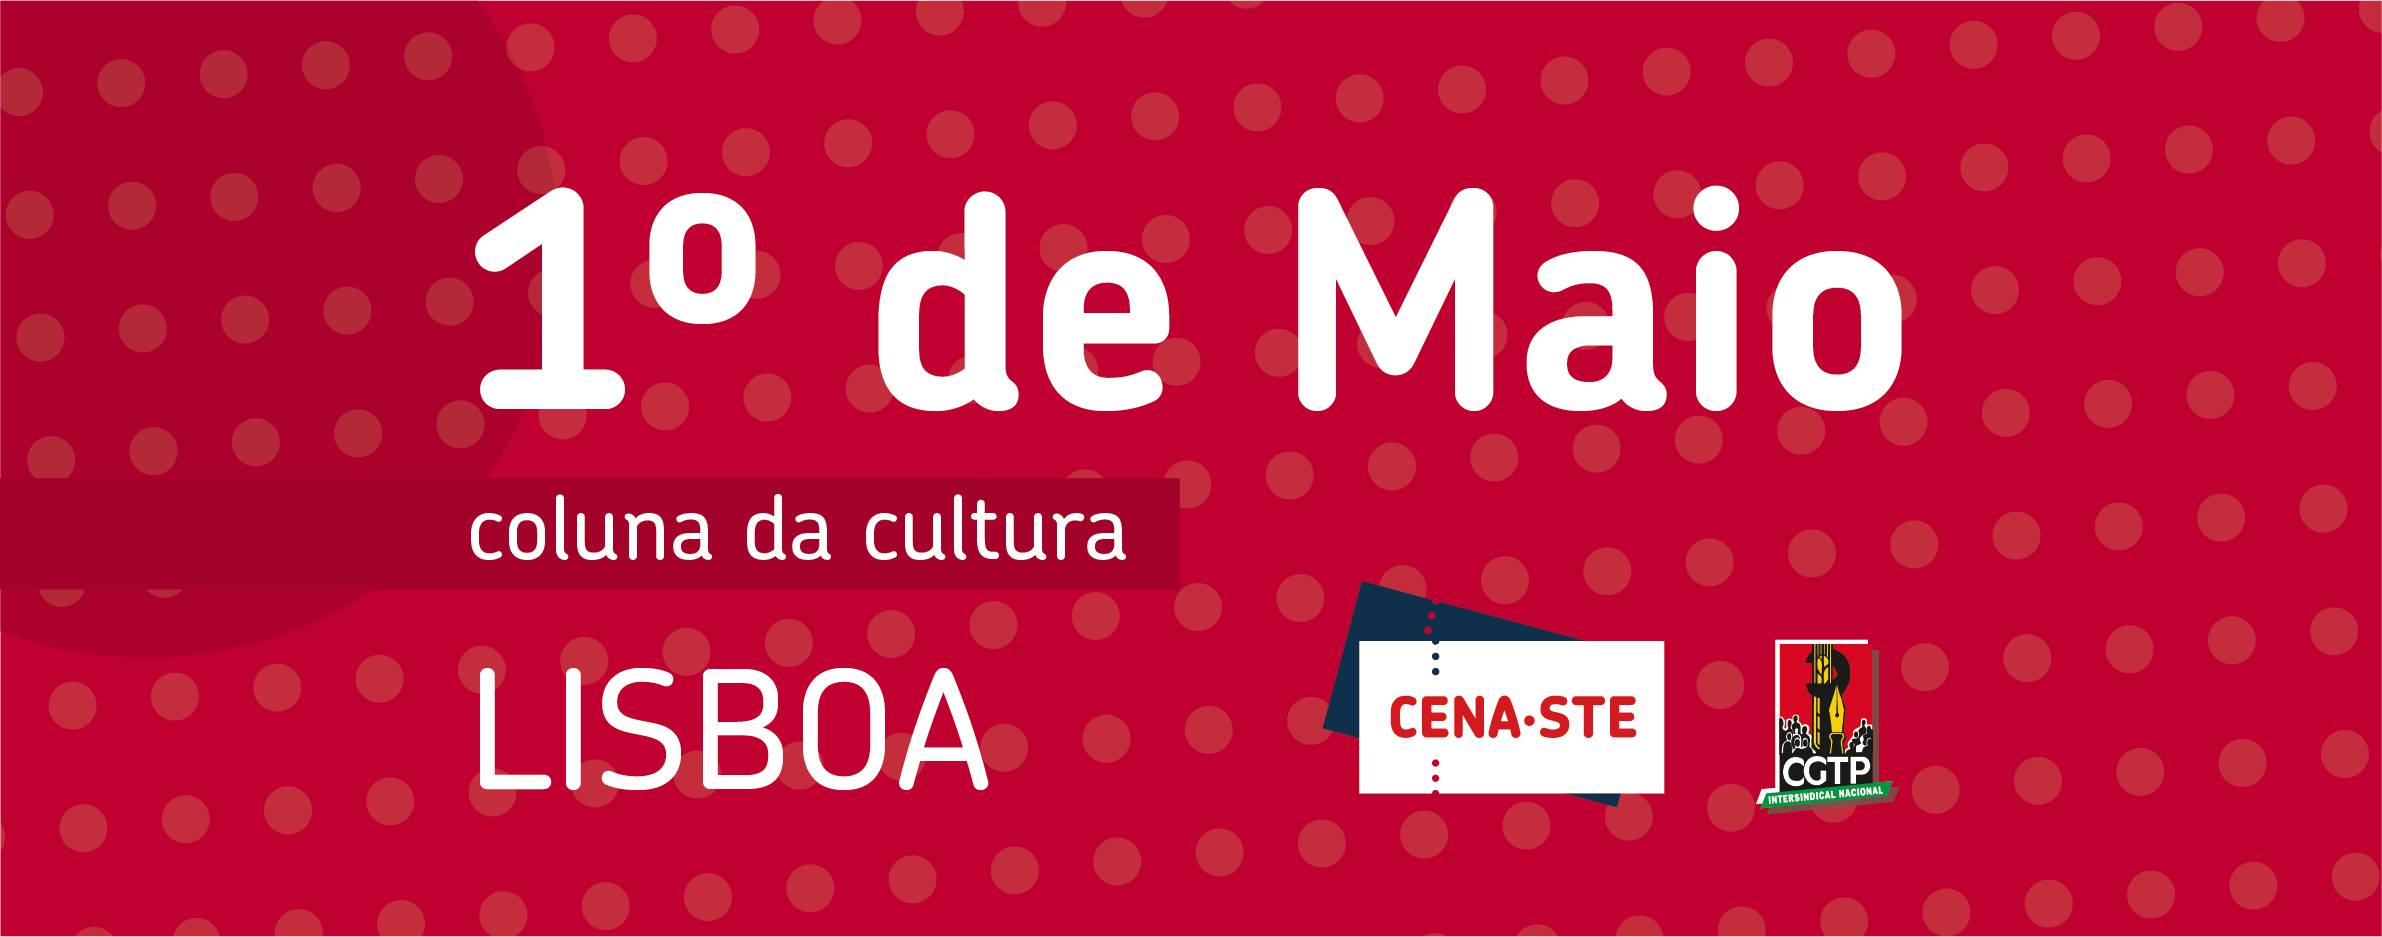 1º de Maio | CENA-STE | Lisboa